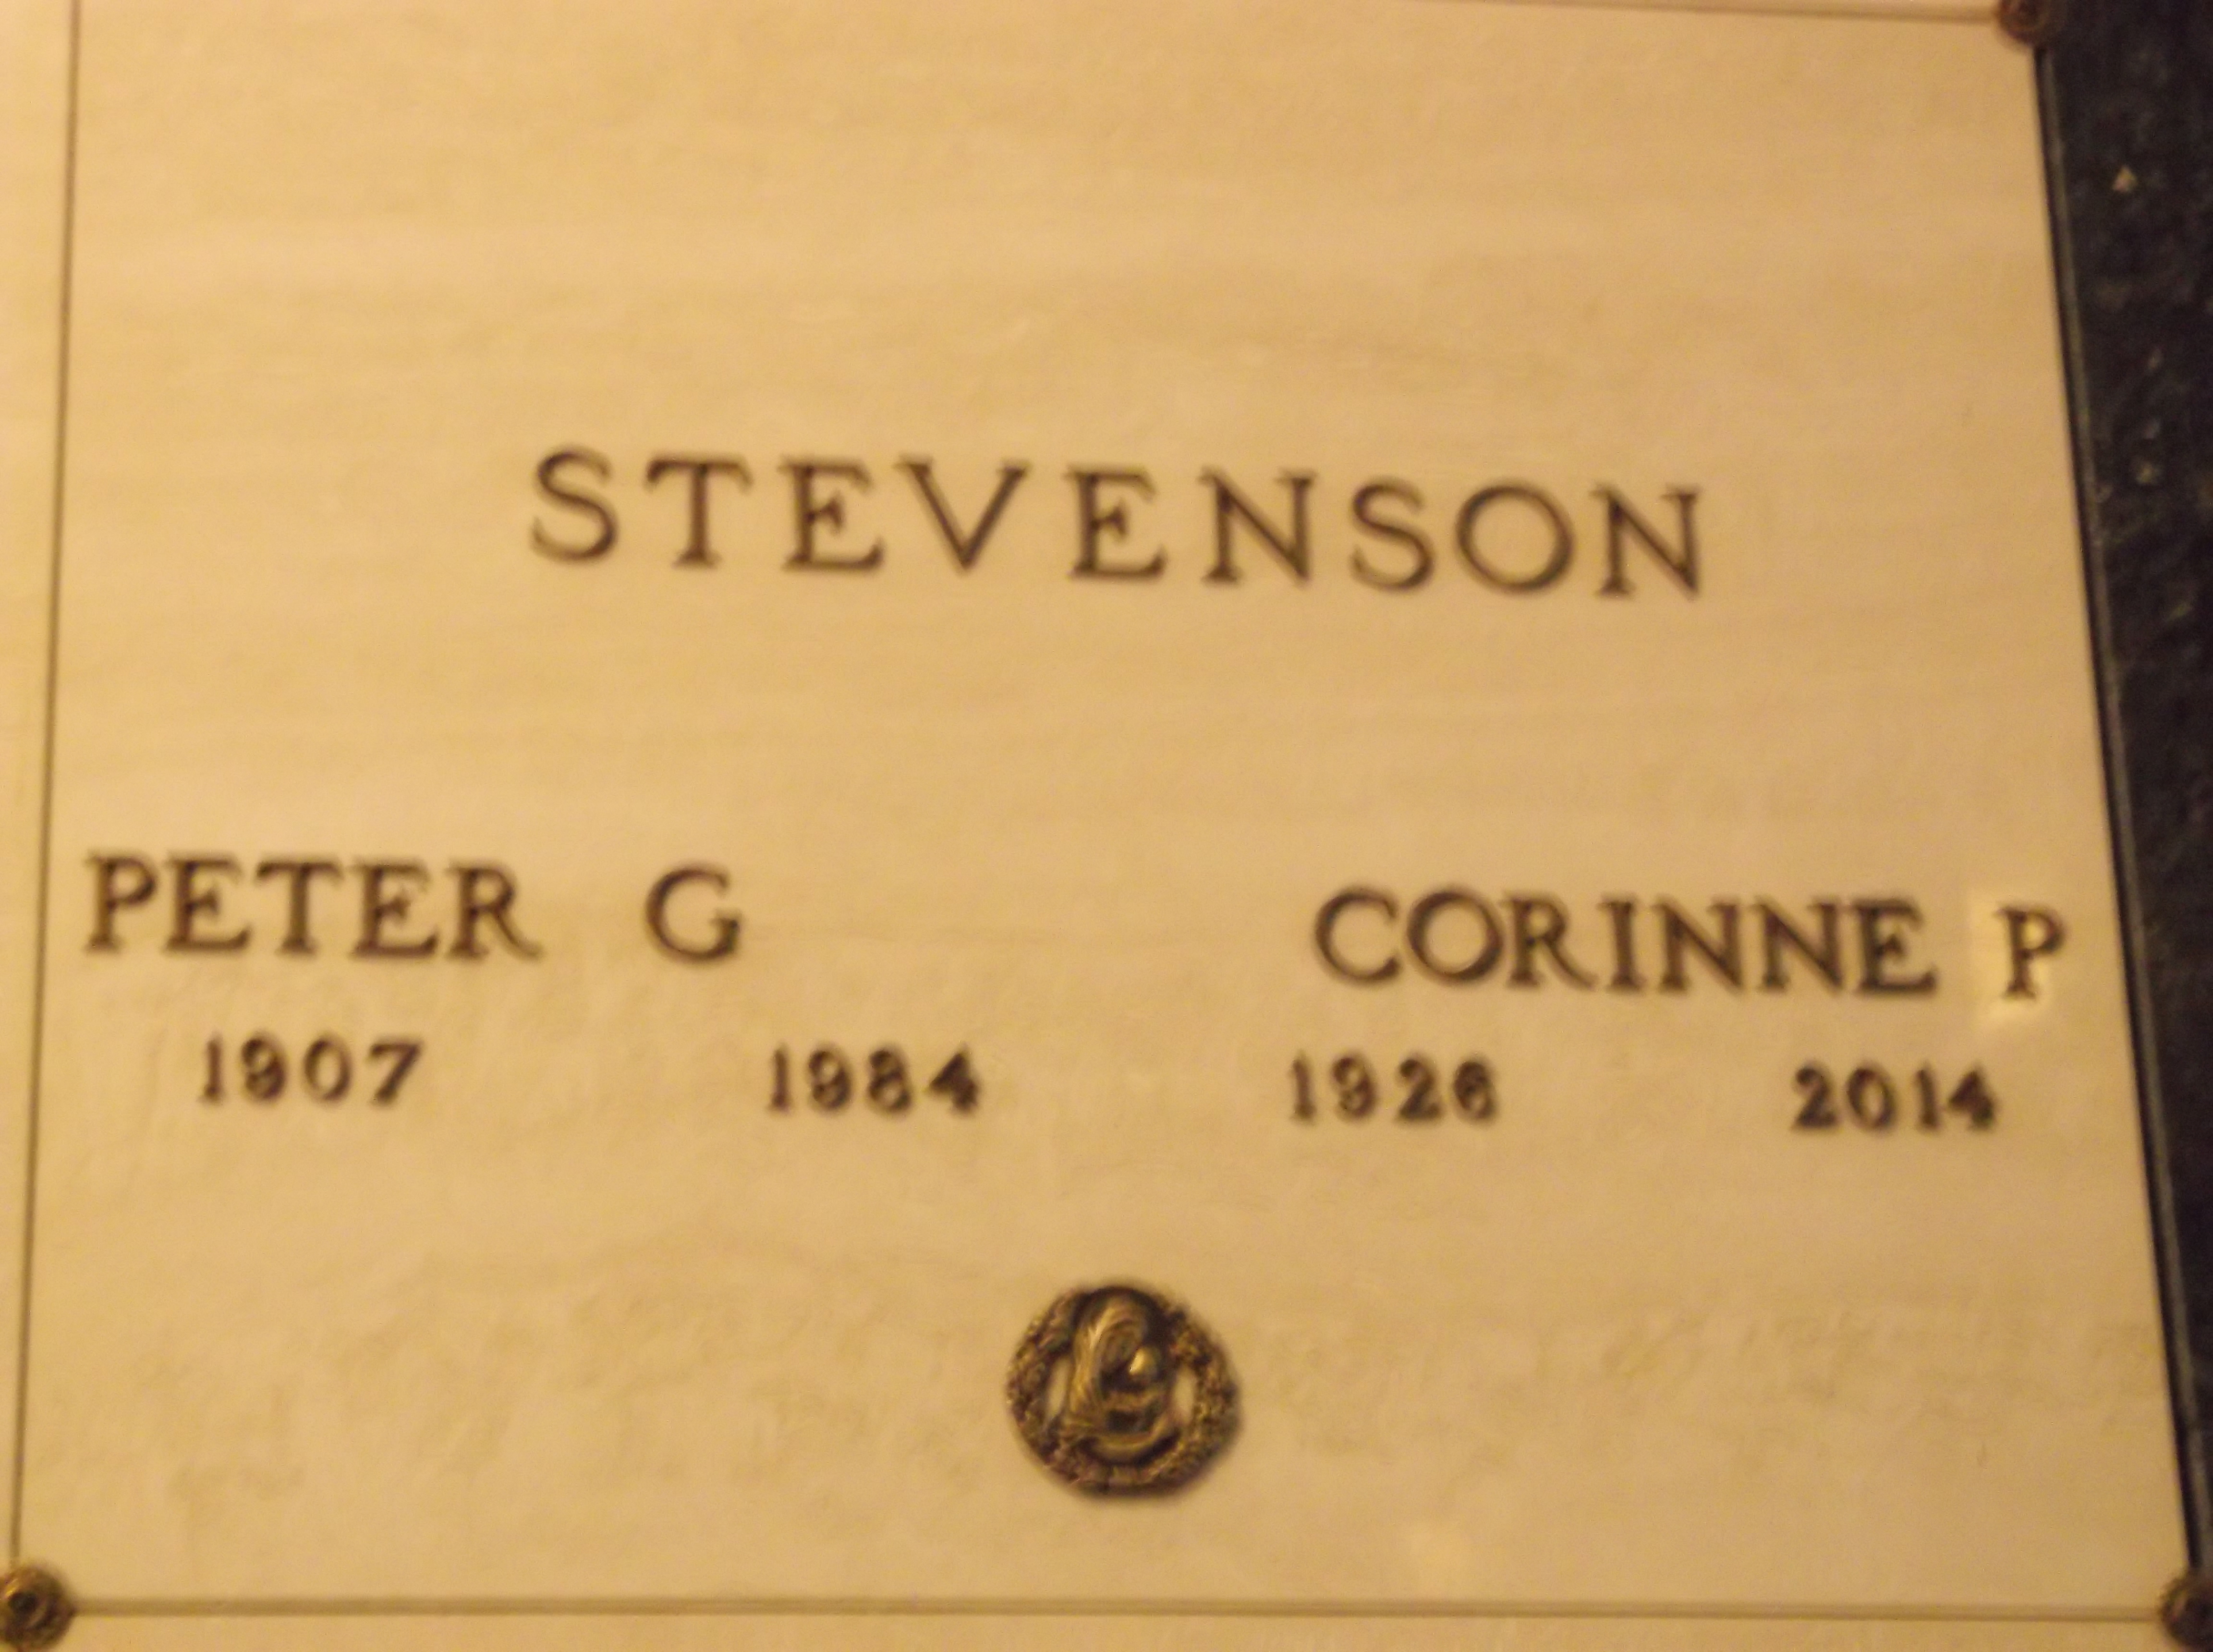 Peter G Stevenson